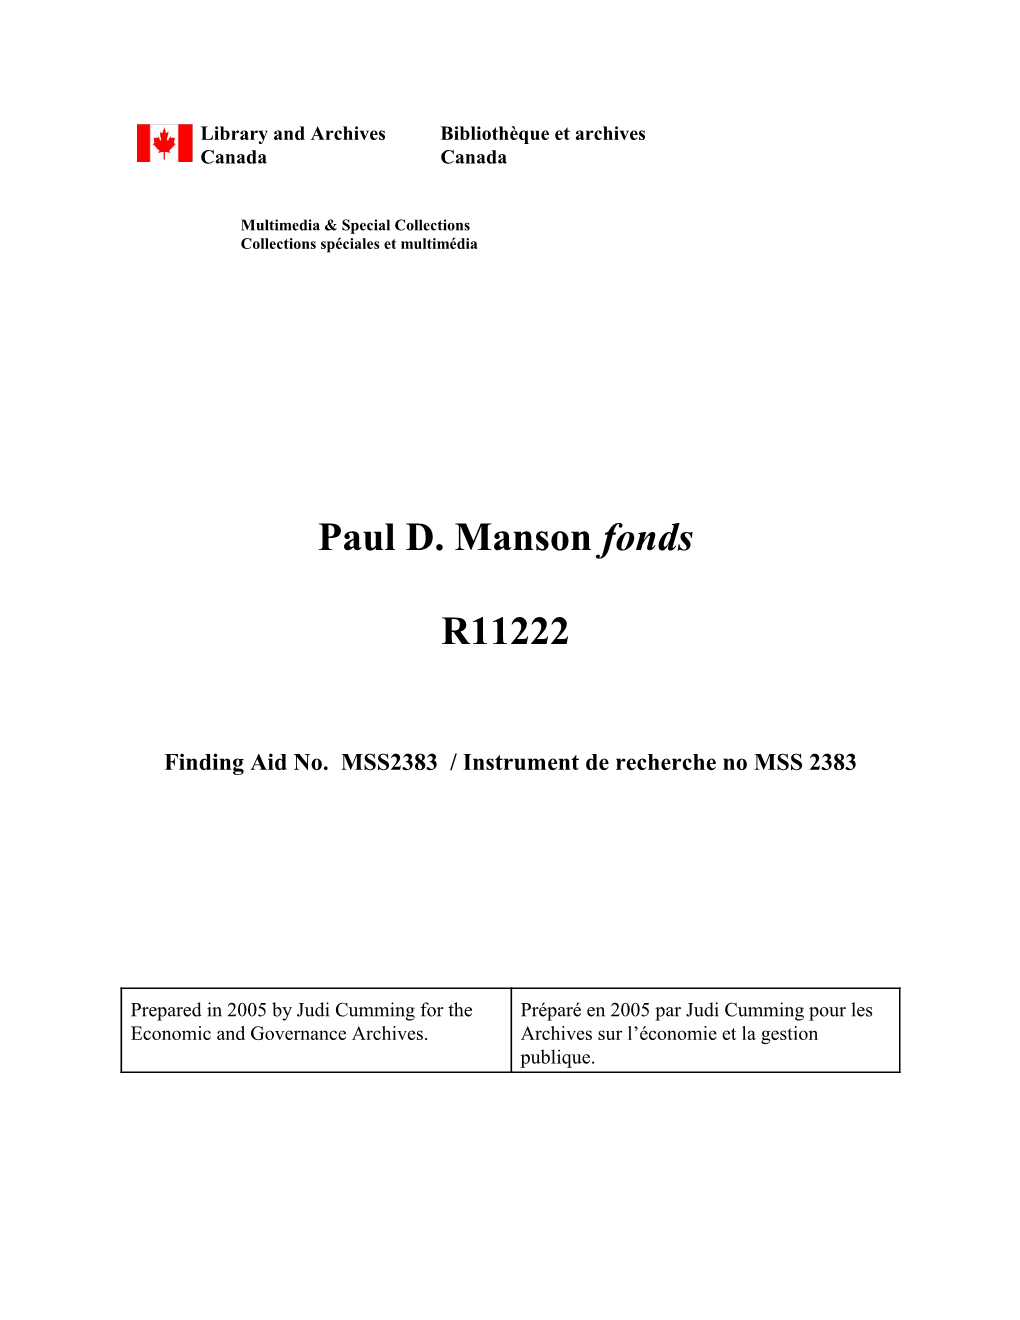 Paul D. Manson Fonds R11222 Container File File Description Date